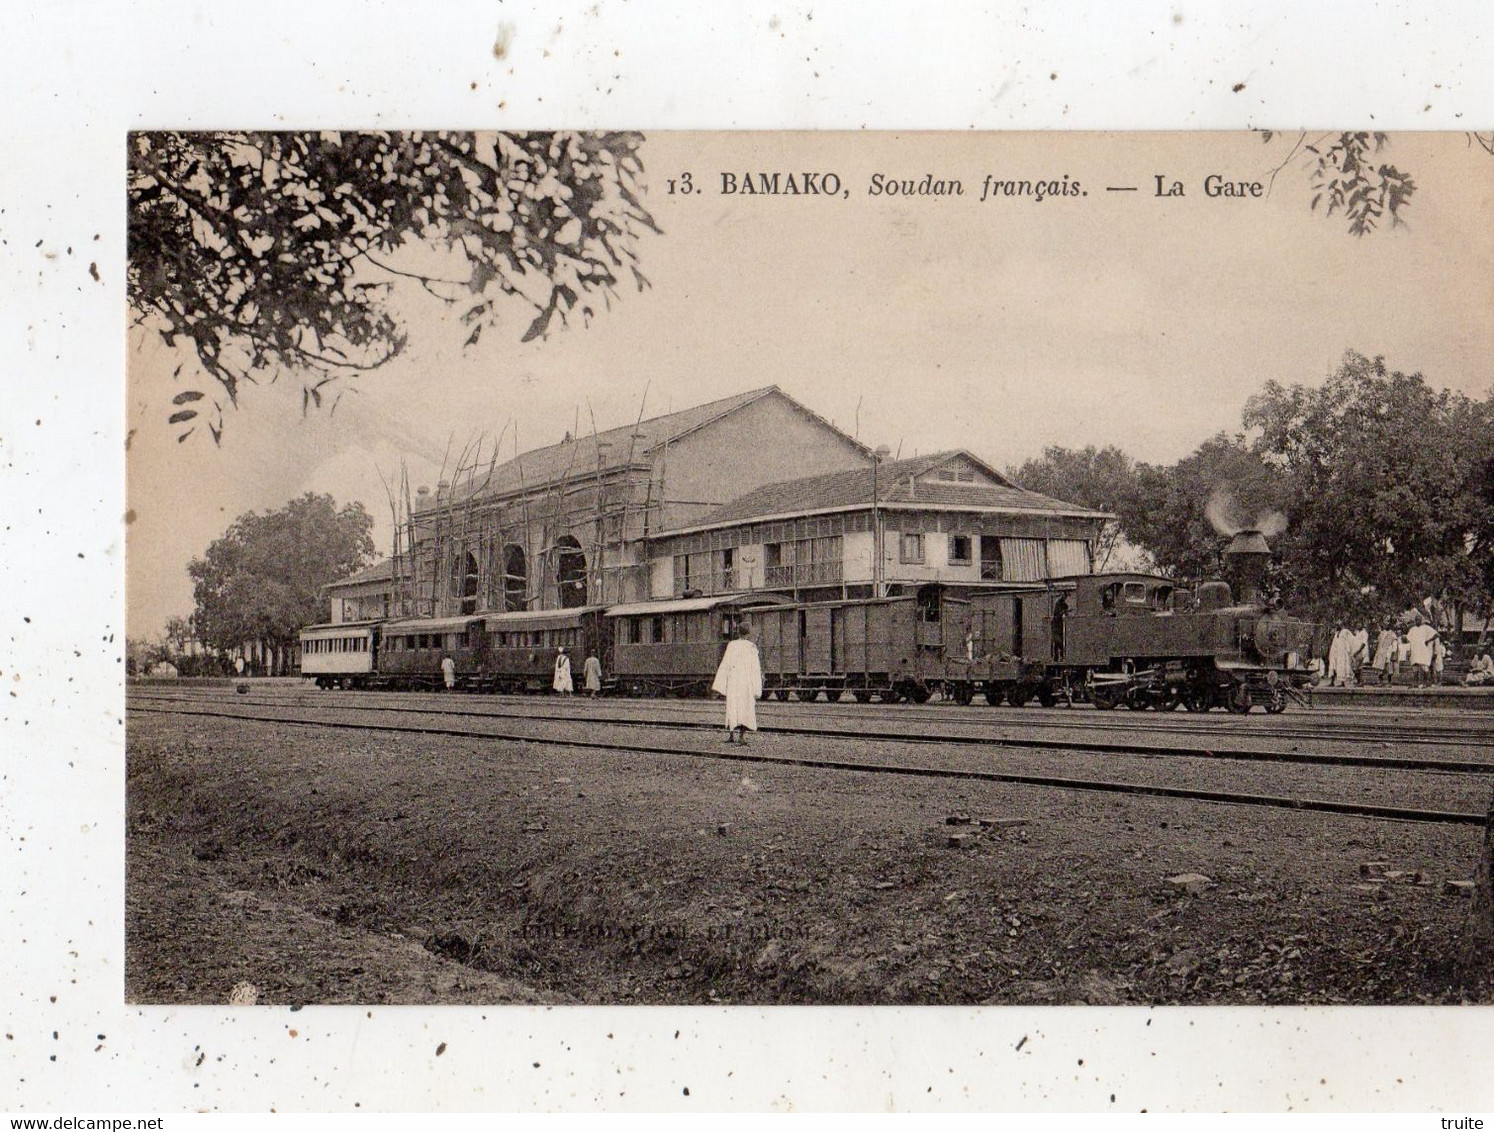 BAMAKO LA GARE (TRAIN) - Soudan